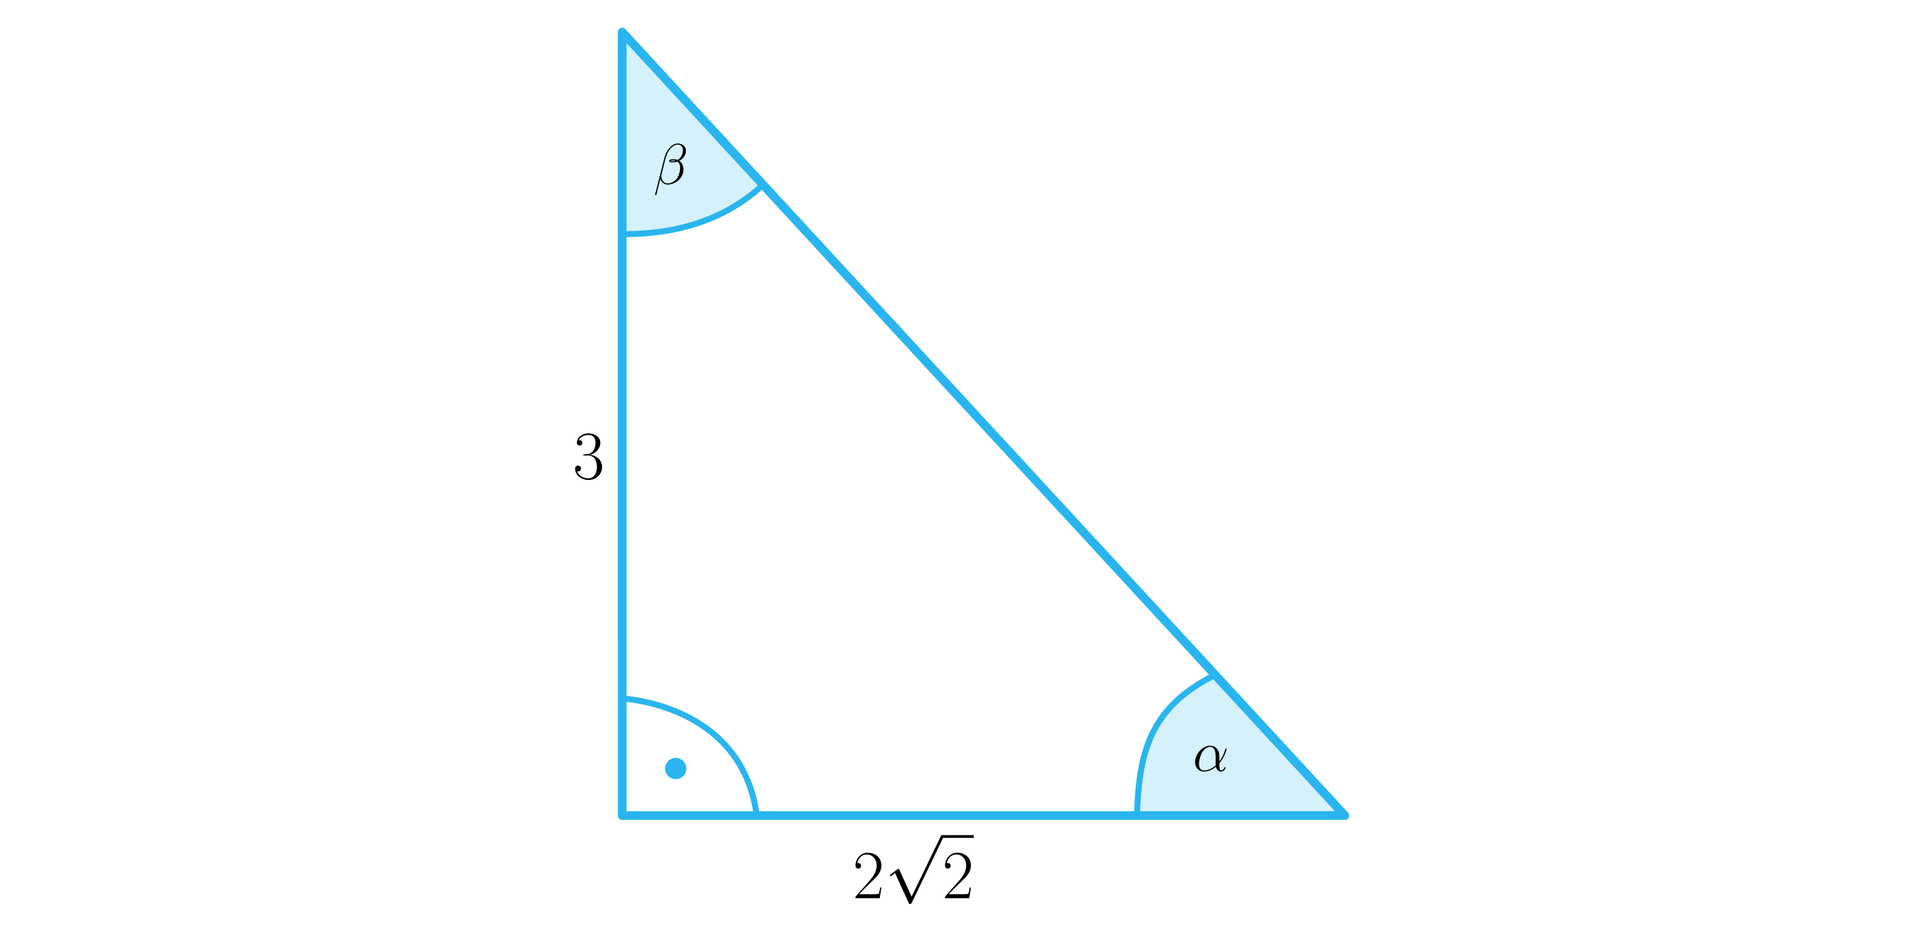 Rysunek przedstawia trójkąt prostokątny o podstawie o długości 22 i o pionowej przyprostokątnej o długości 3. Na rysunku zaznaczono również kąty wewnętrzne trójkąta. Kąt prosty między opisanymi wyżej bokami, kąt α między przeciwprostokątną a podstawą o długości 22 oraz kąt β między przyprostokątną a bokiem o długości 3.